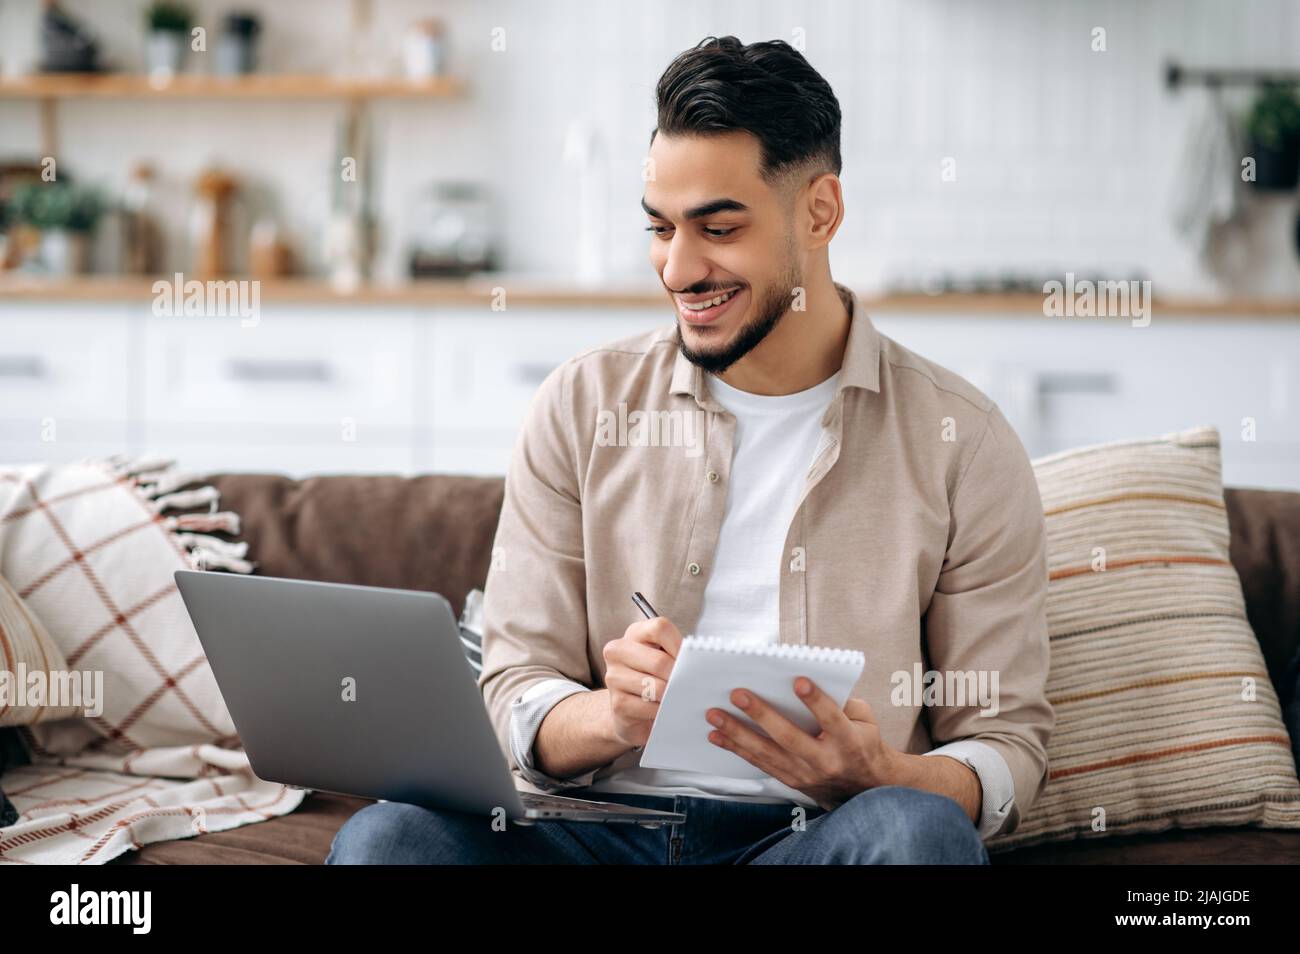 Ein positiver intelligenter inder oder araber, der sich Notizen macht, während er an einem Projekt arbeitet oder online lernt, verwendet einen Laptop, sitzt auf einem Sofa im Wohnzimmer, stöbert im Internet nach Informationen und bereitet einen Bericht vor Stockfoto